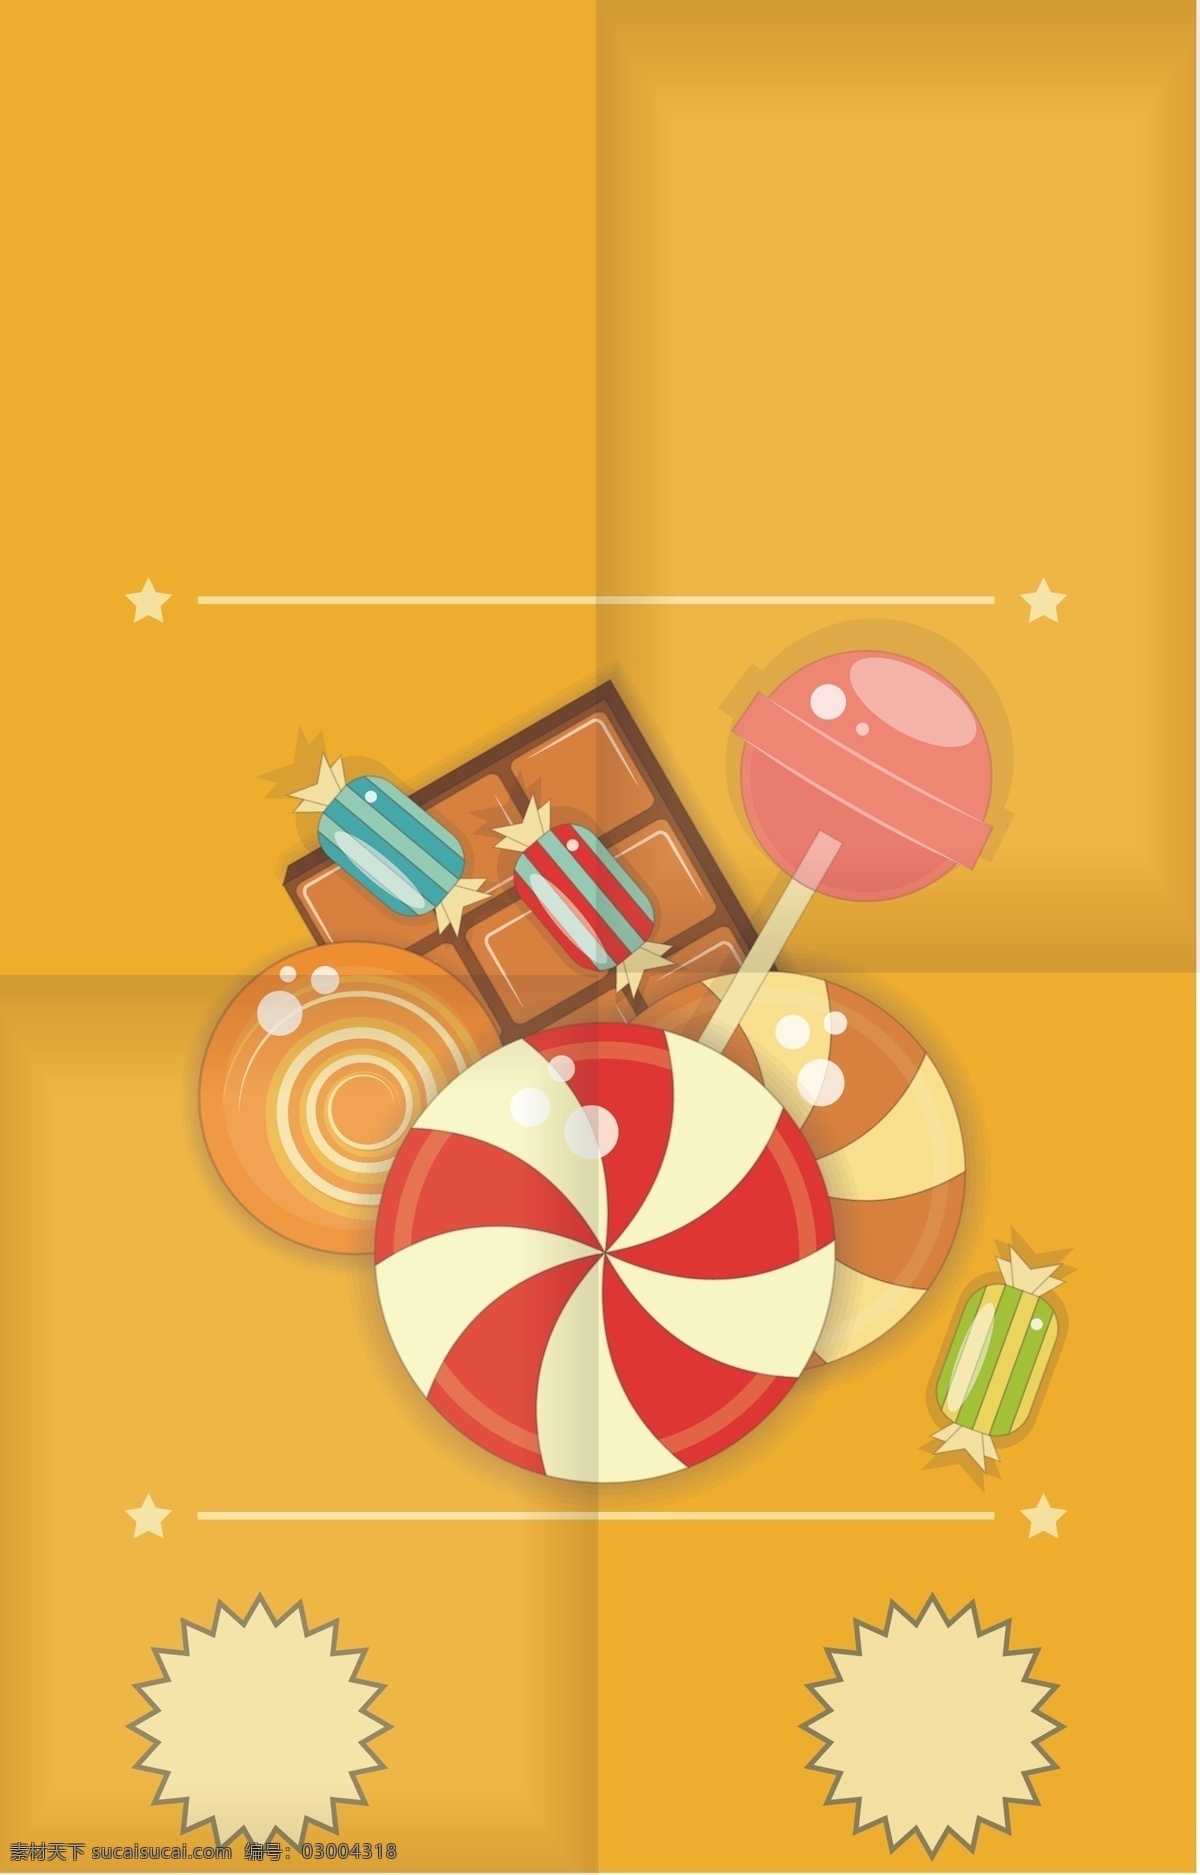 棱角 中间 小 零食 背景 棒棒糖 饼干 矢量素材 温暖 巧克力 橘黄色 四边形 童趣 海报 高清 设计图